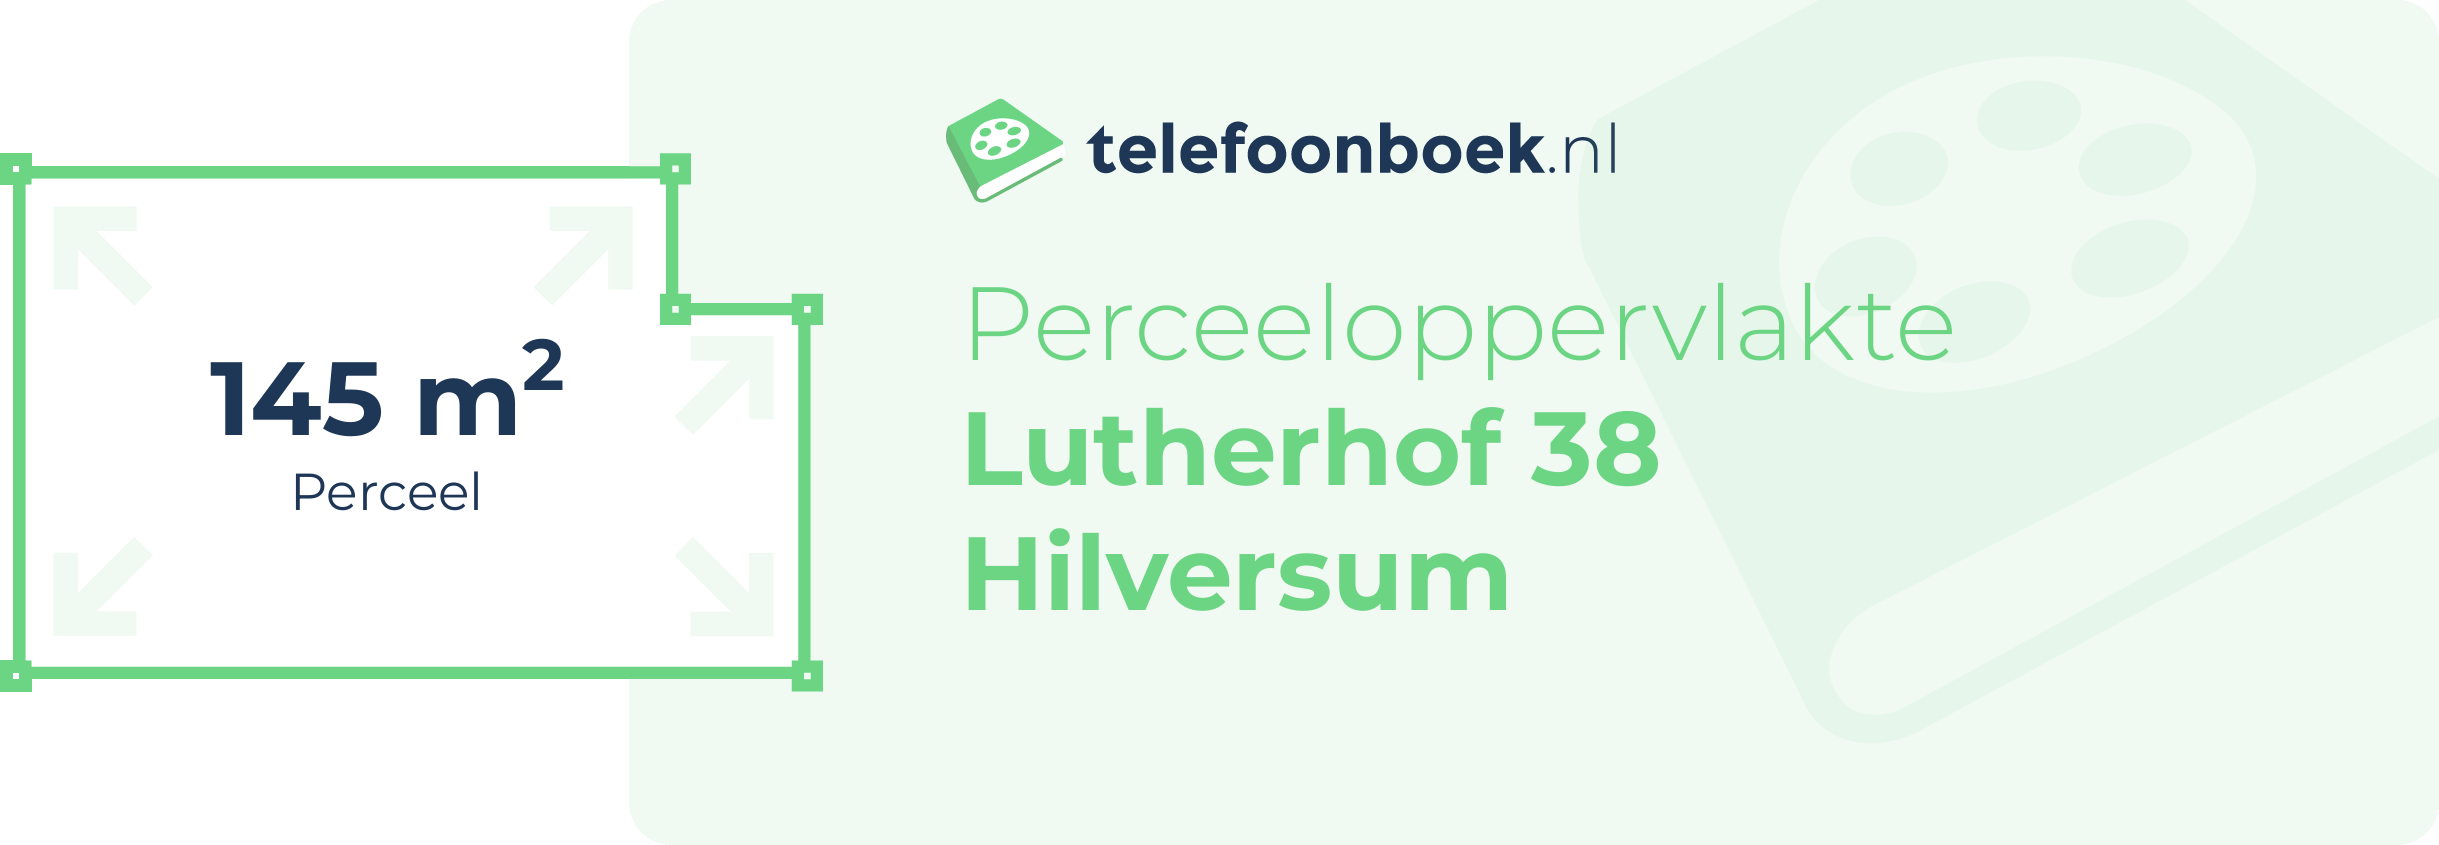 Perceeloppervlakte Lutherhof 38 Hilversum